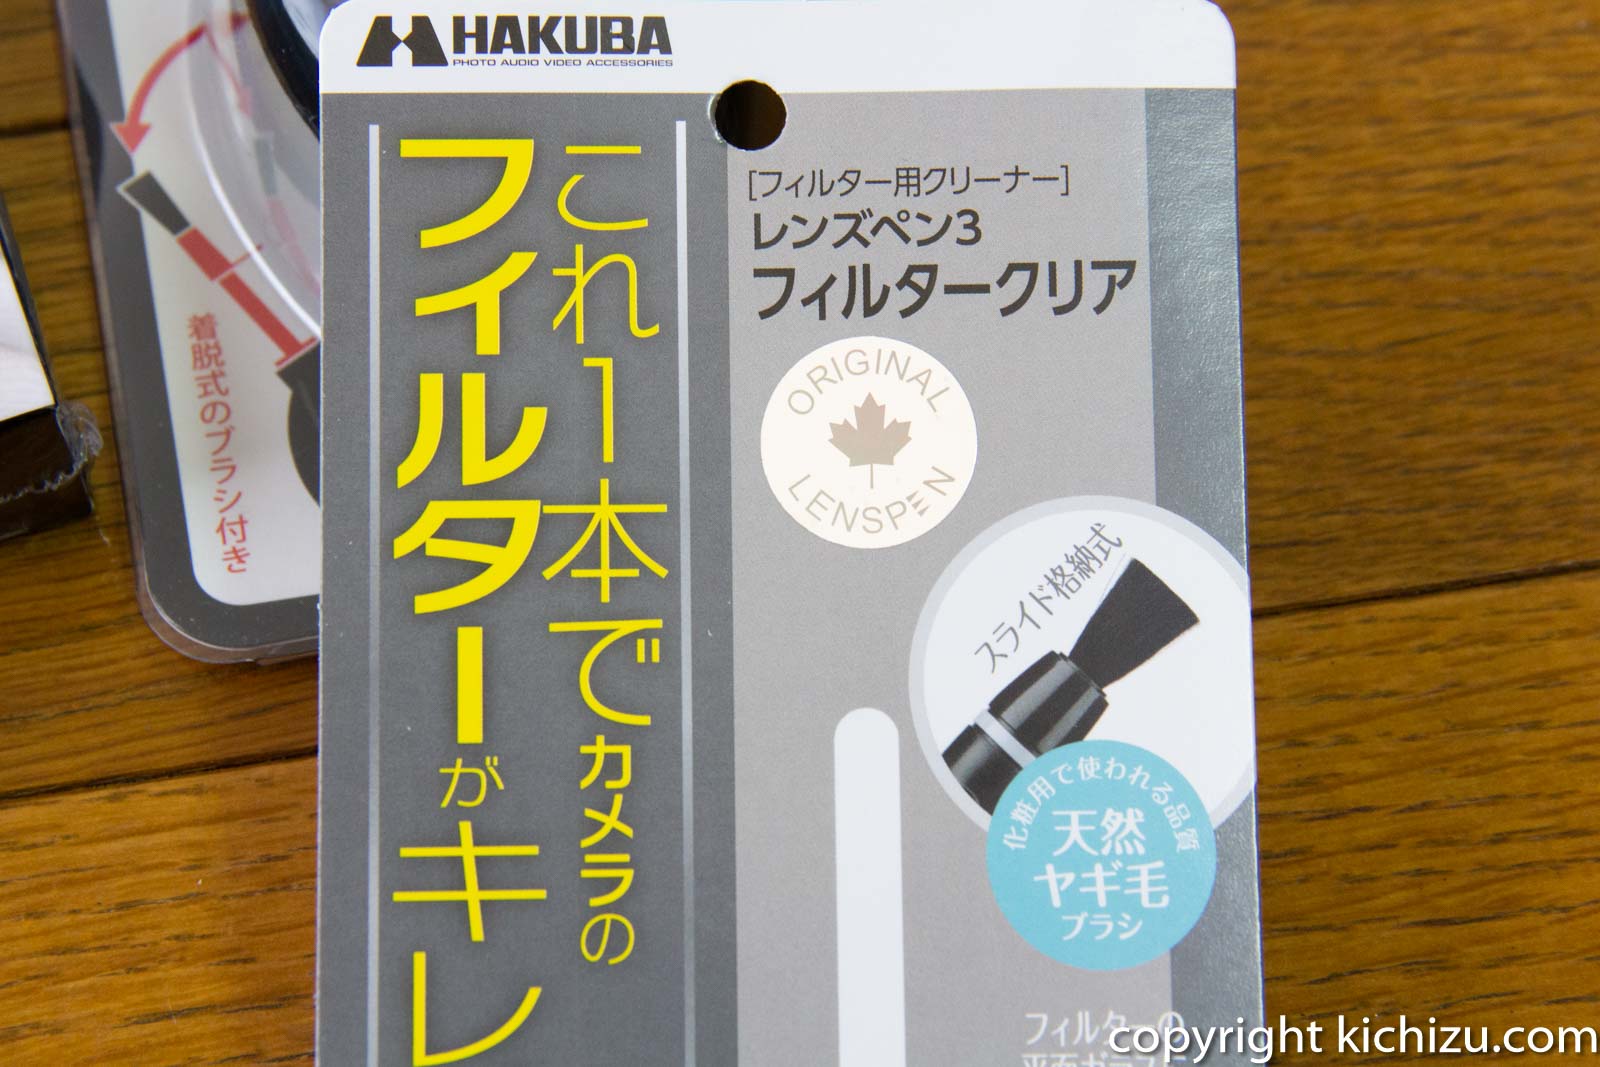 534円 【はこぽす対応商品】 ハクバ KMC-LP14B メンテナンス用品 レンズペン3 フィルター用 ブラック HAKUBA